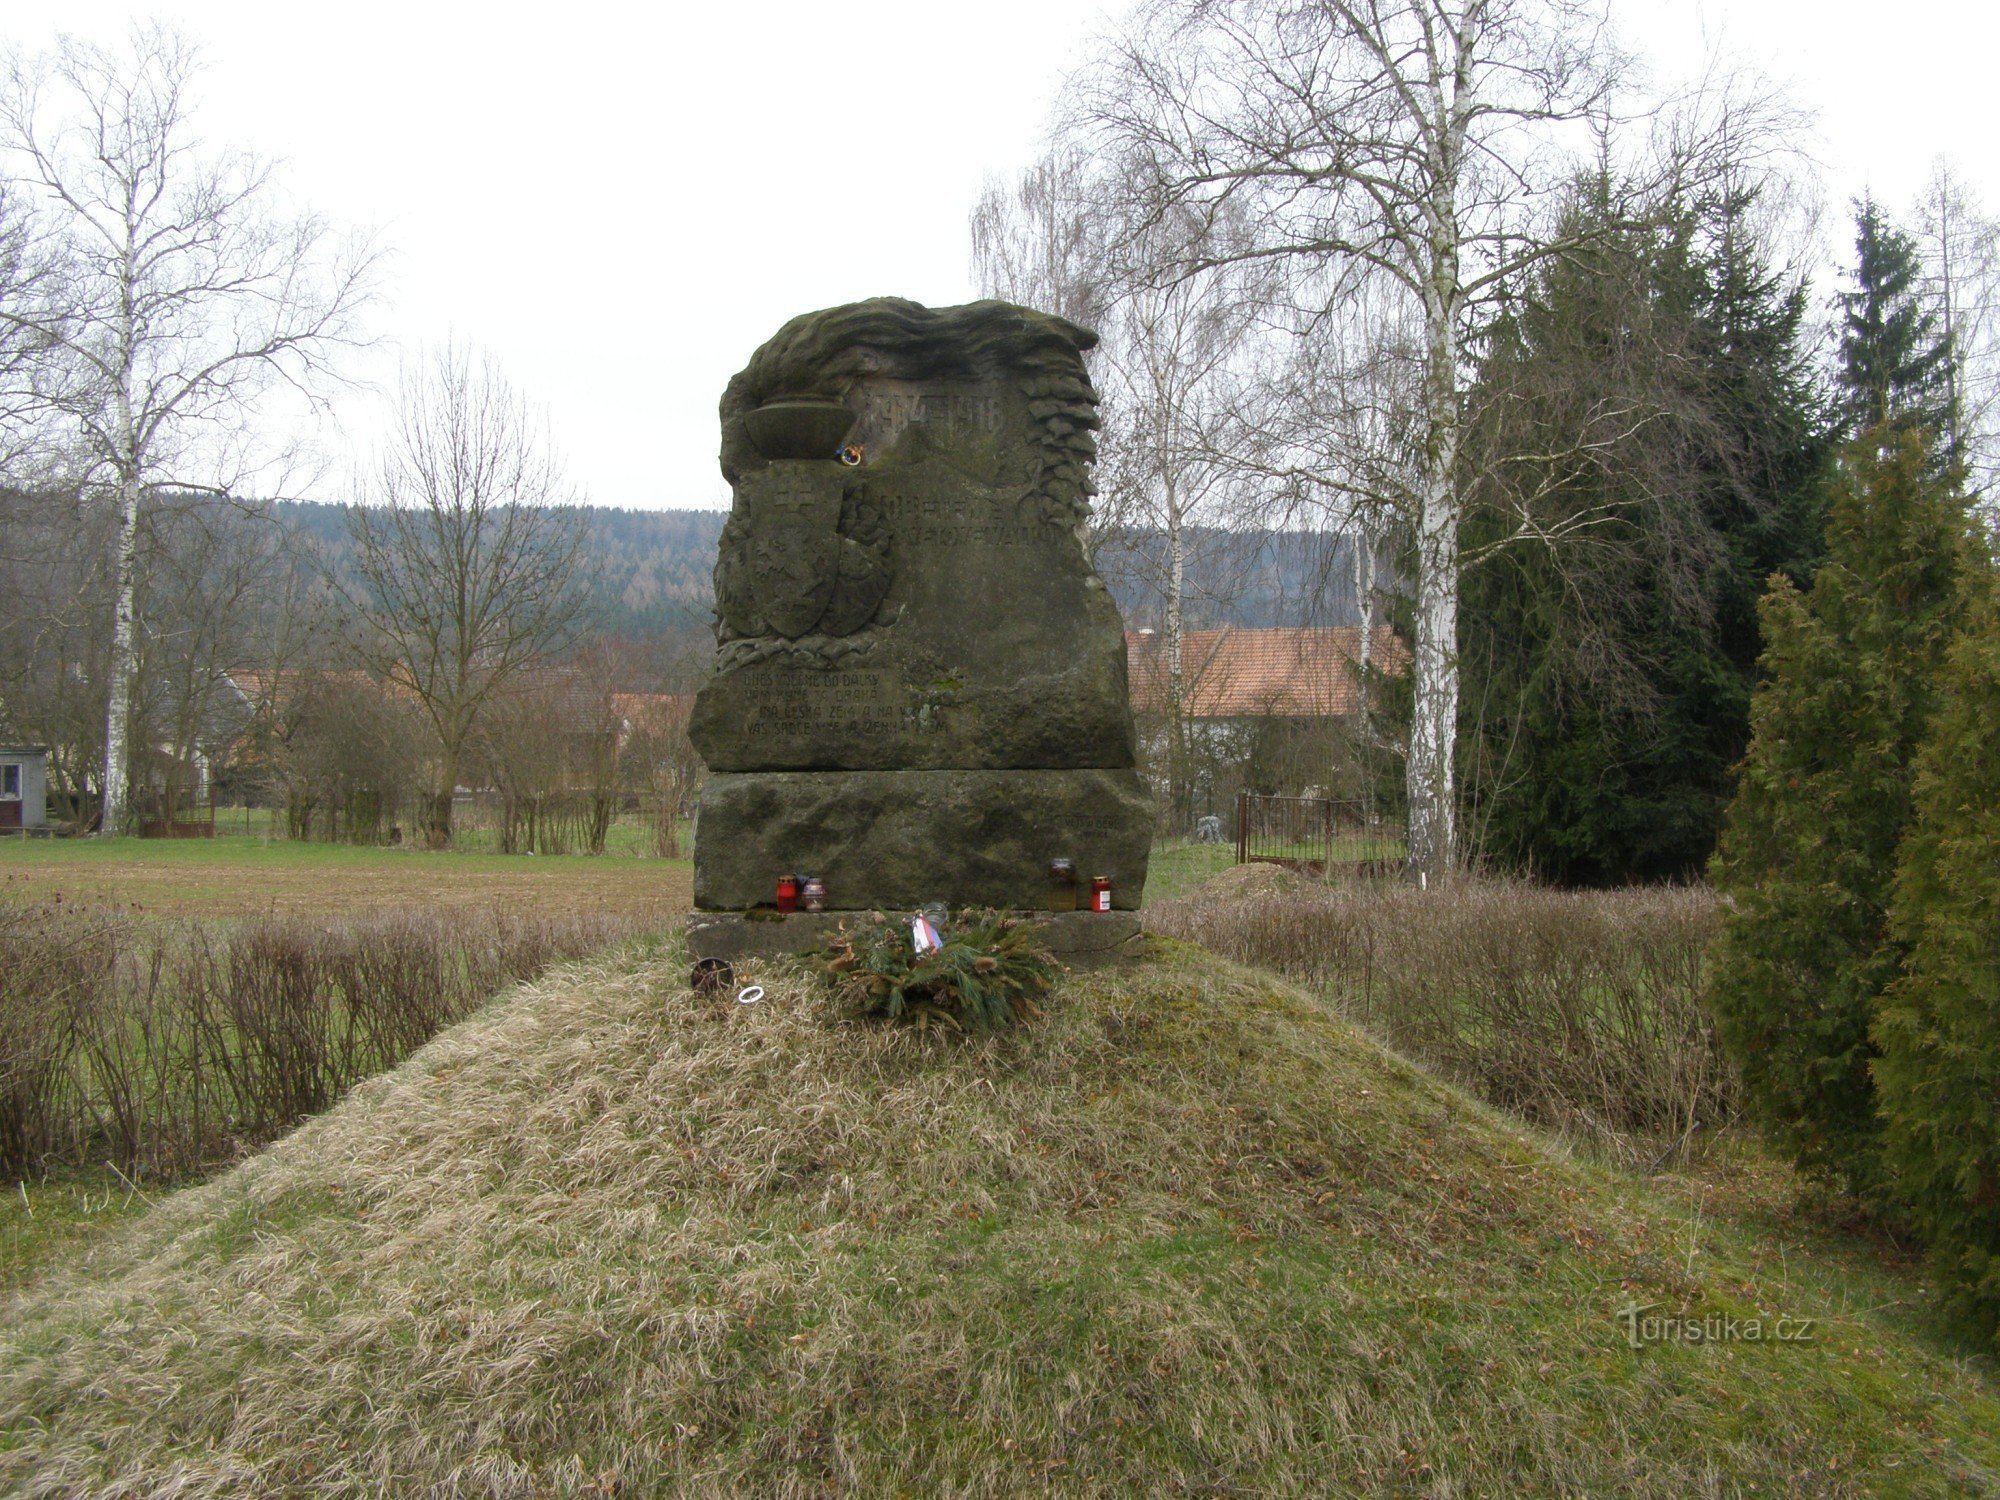 Lukavec u Hořice - đài tưởng niệm các nạn nhân của Đệ nhất St. chiến tranh